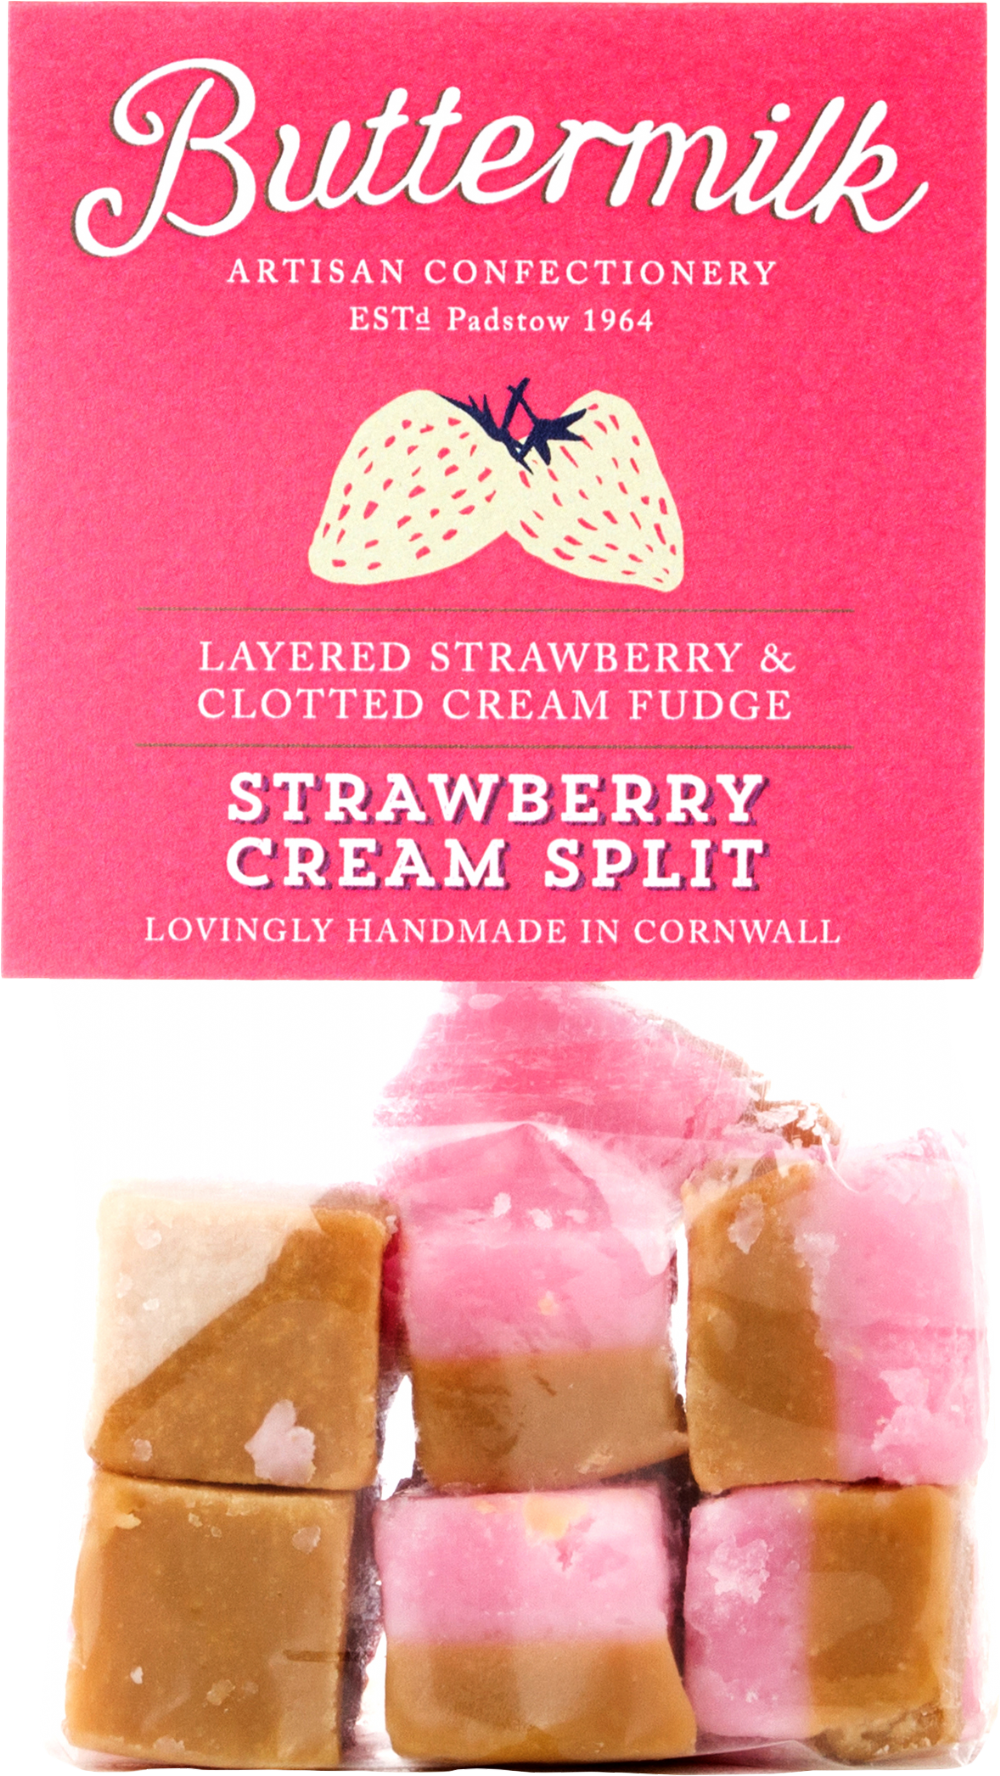 BUTTERMILK Strawberry Cream Split Fudge 175g